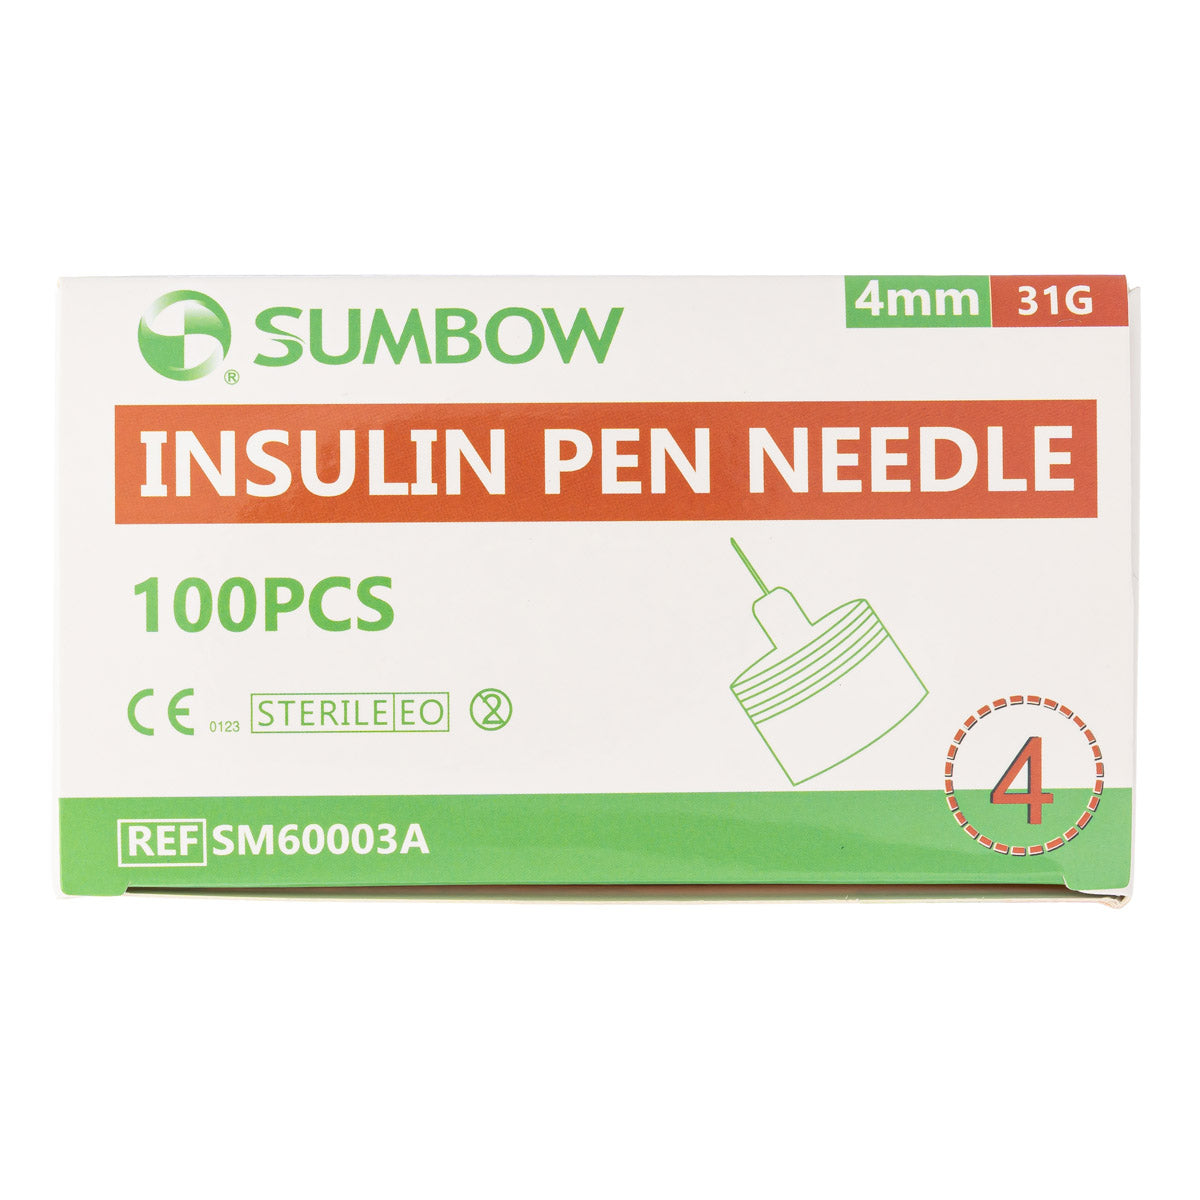 NOVO NORDISK NovoFine Pen needles 32G x 6mm 100 pcs